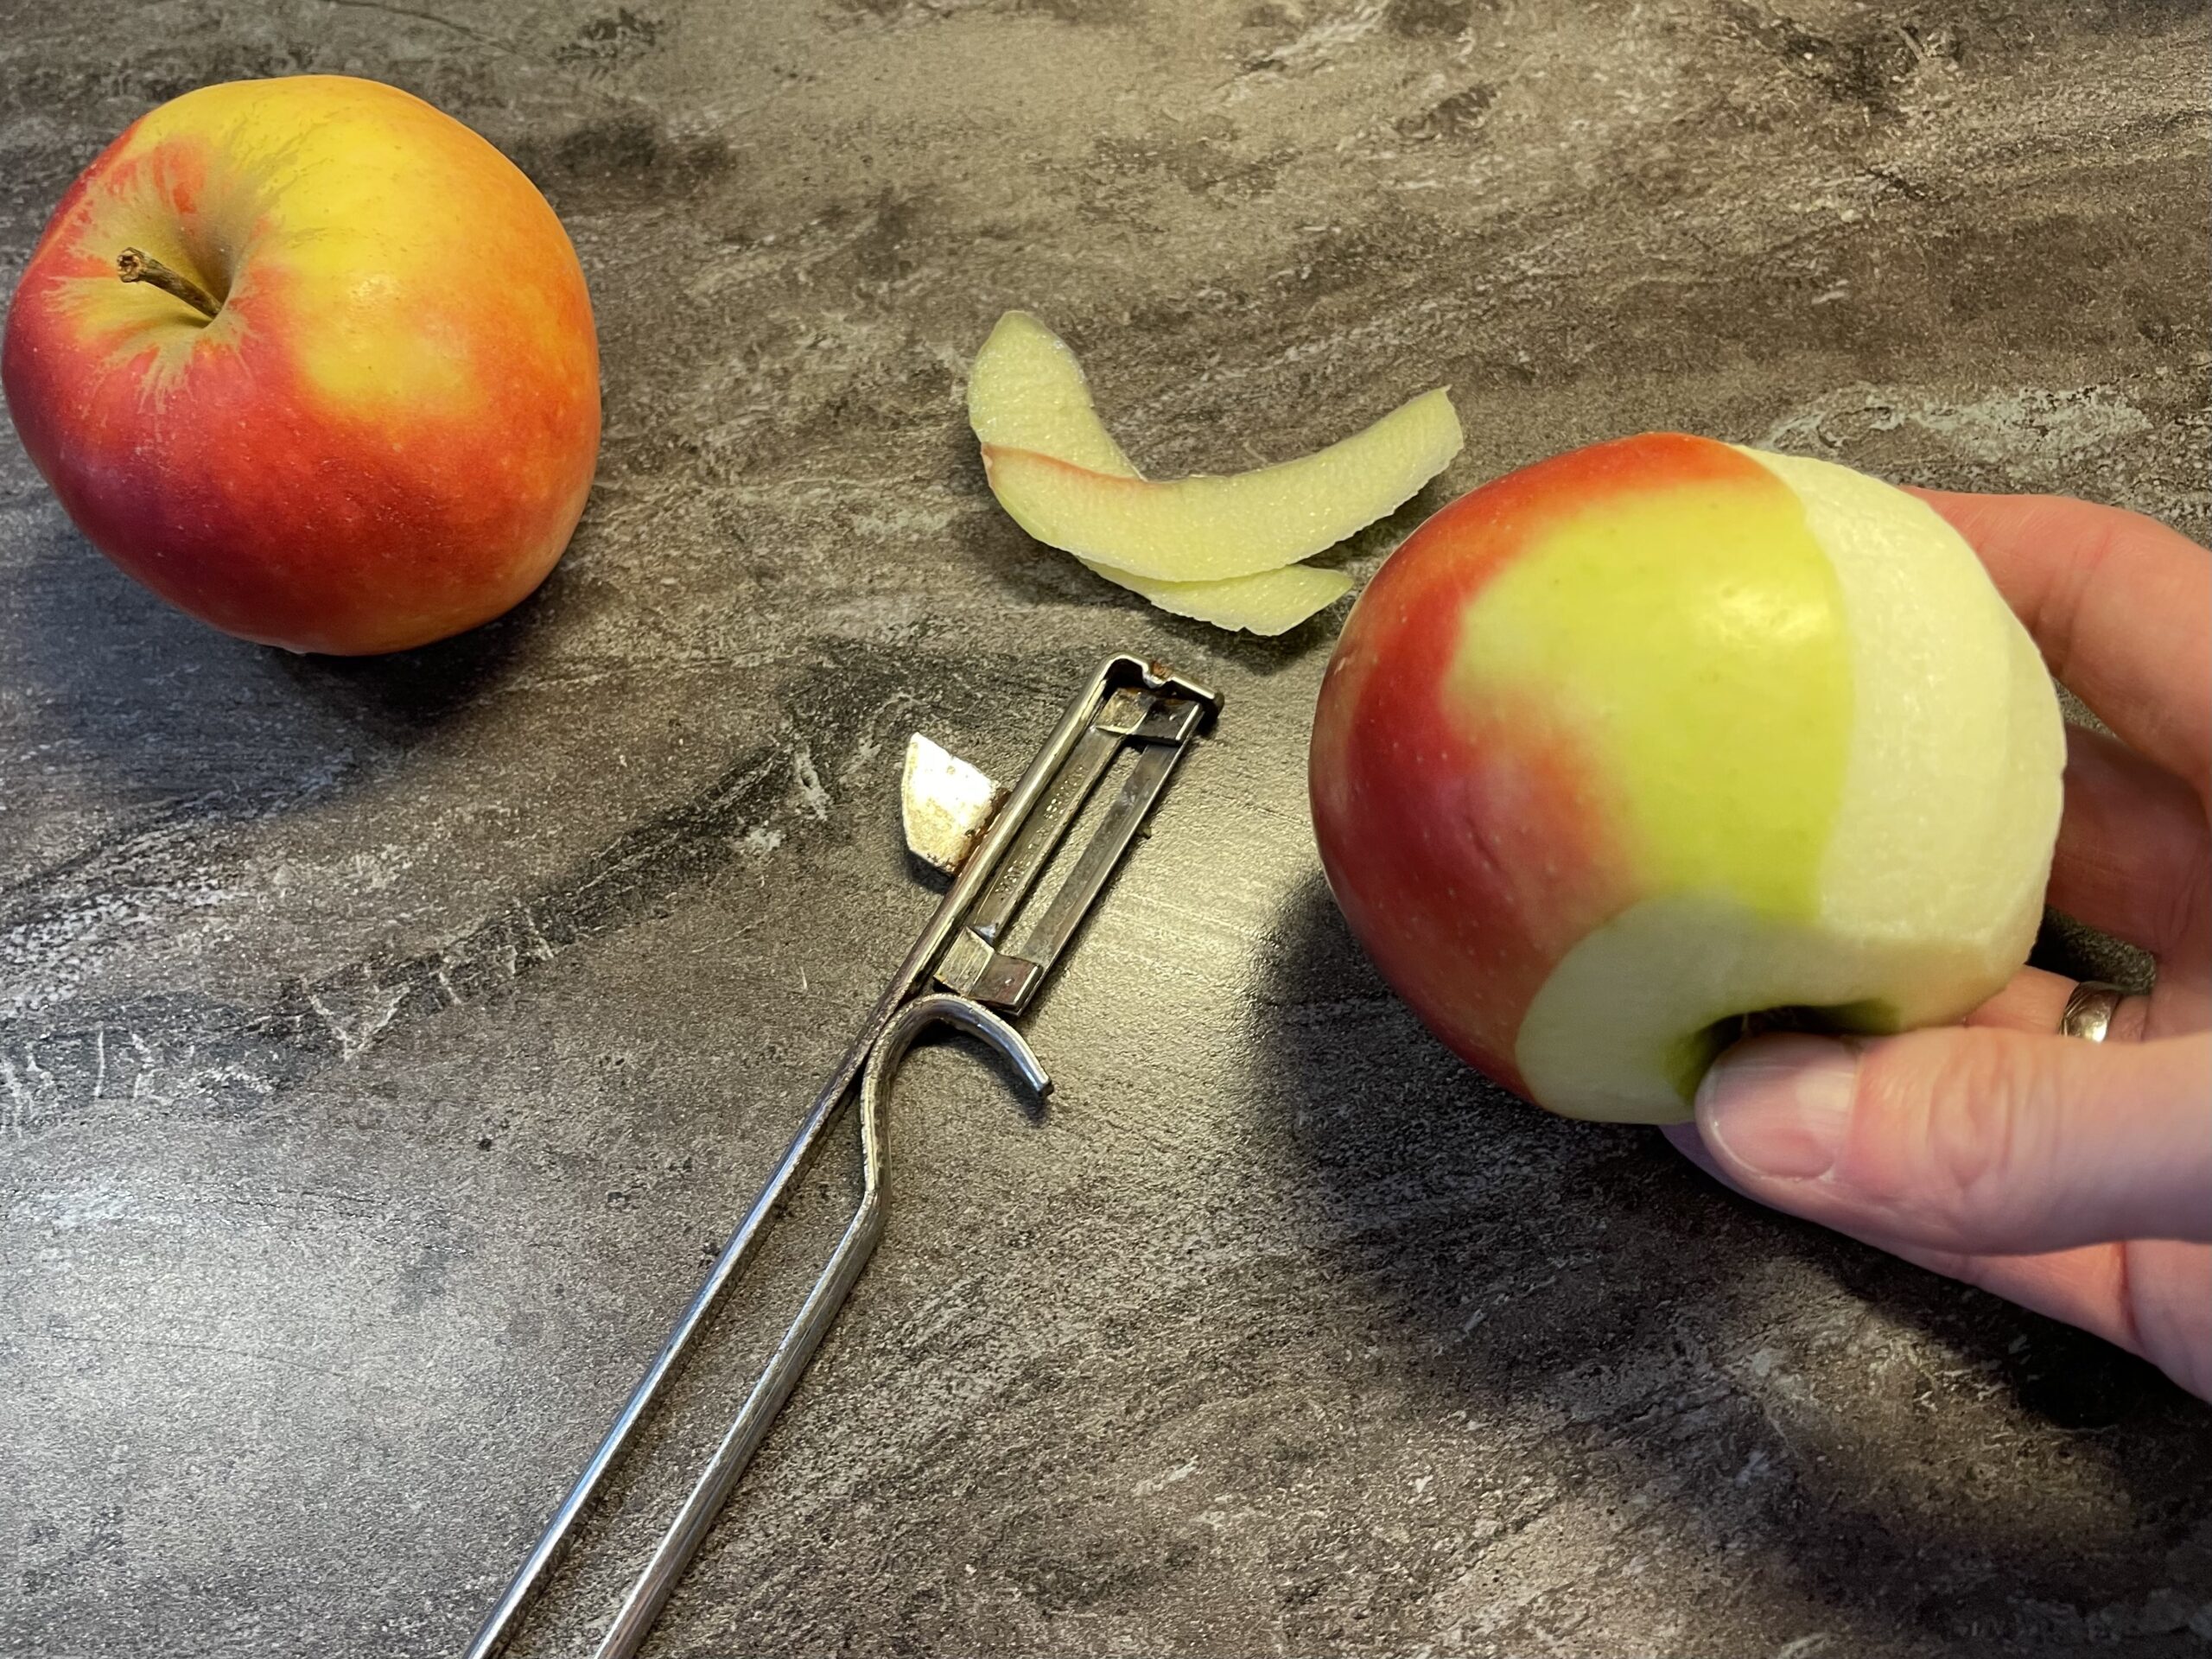 Bild zum Schritt 11 für das Bastel- und DIY-Abenteuer für Kinder: 'Wascht  die Äpfel und schält sie mit einem Sparschäler.'